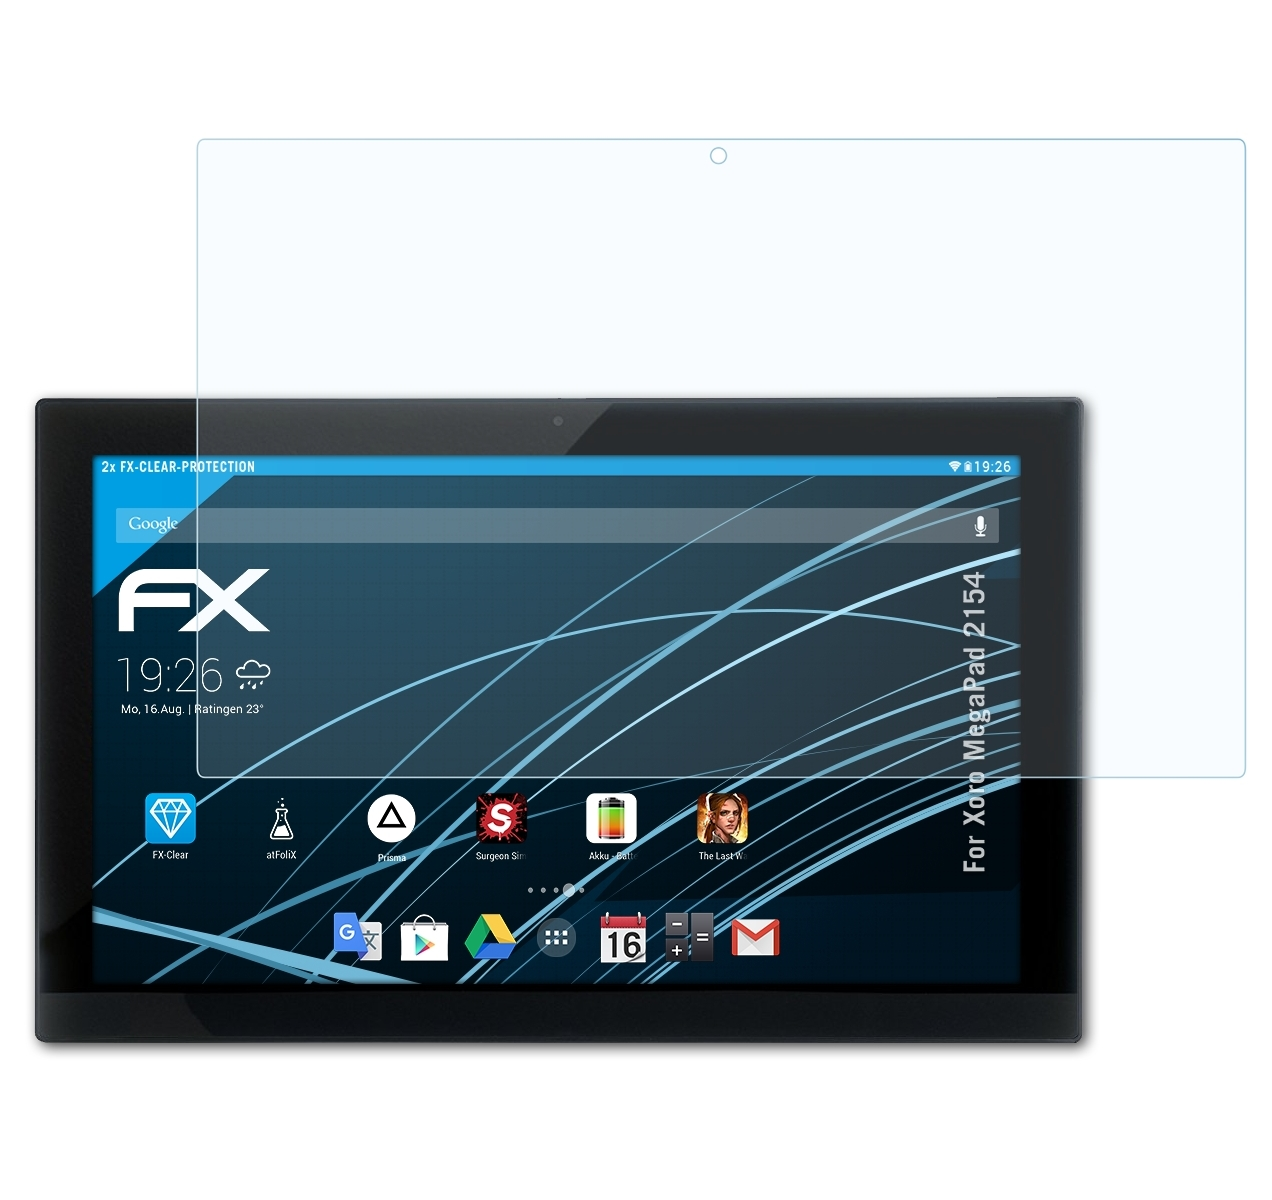 Displayschutz(für FX-Clear ATFOLIX 2154) 2x Xoro MegaPad